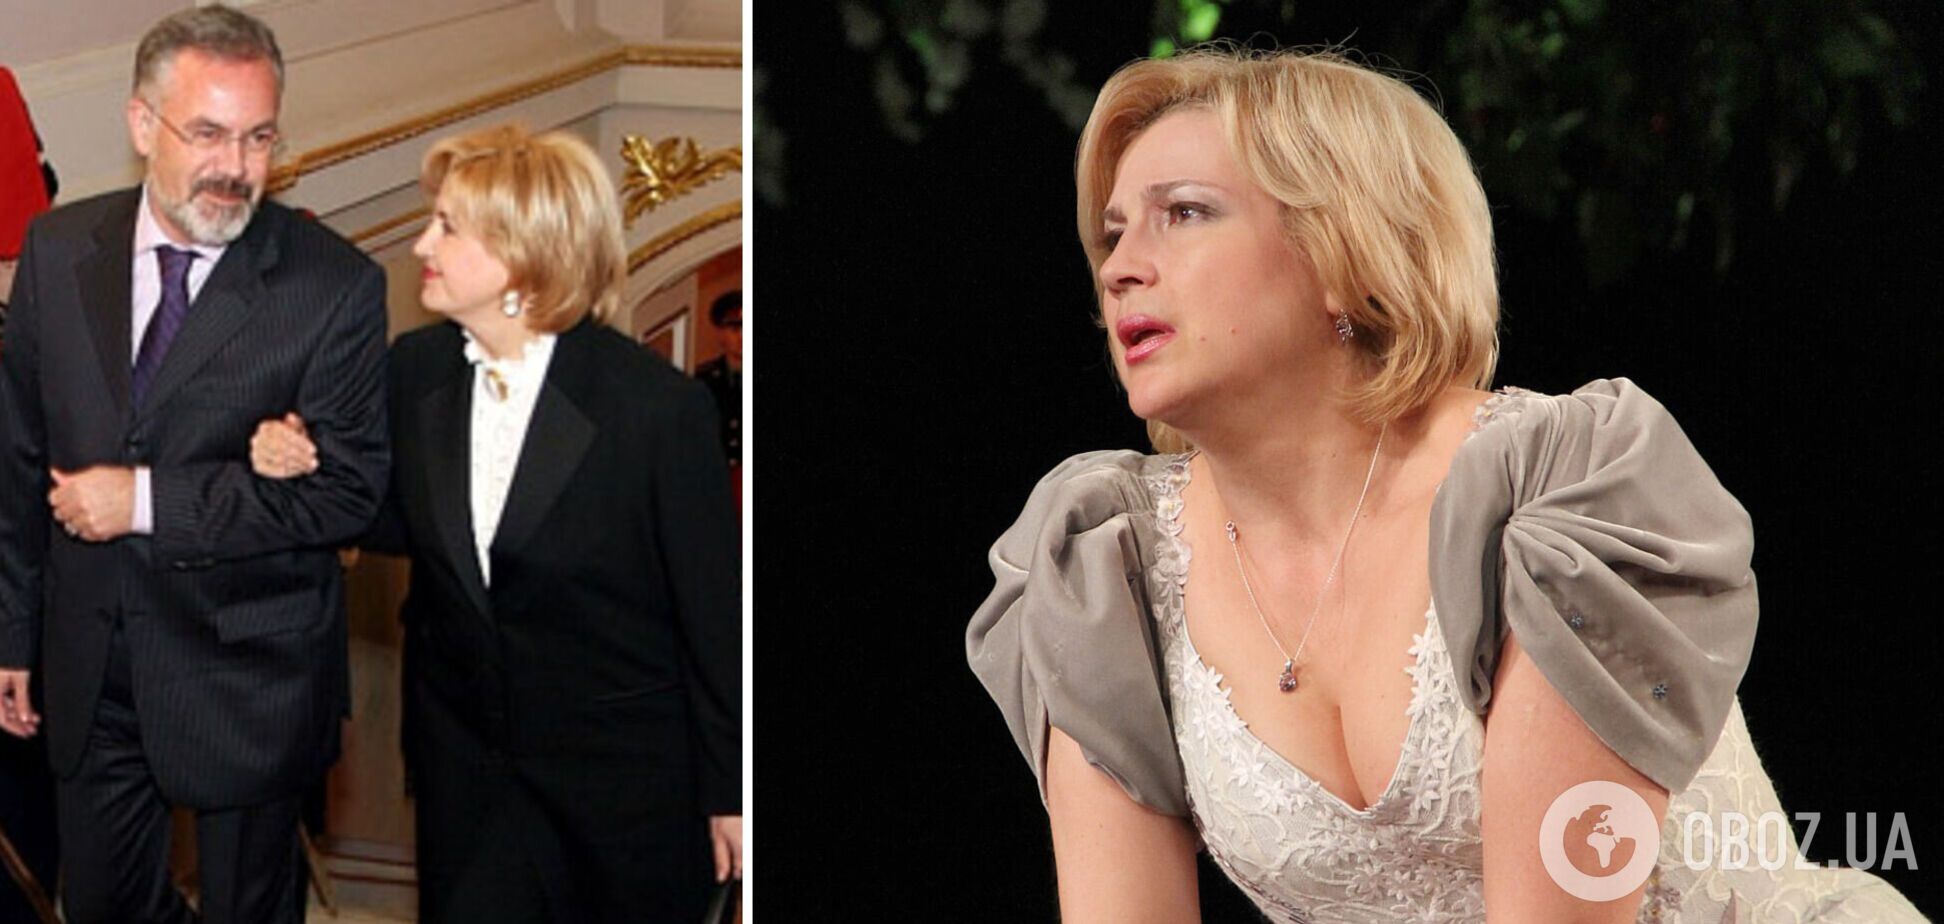 Жена госпредателя Табачника выступит в киевском театре: она не отказалась от наград Кремля